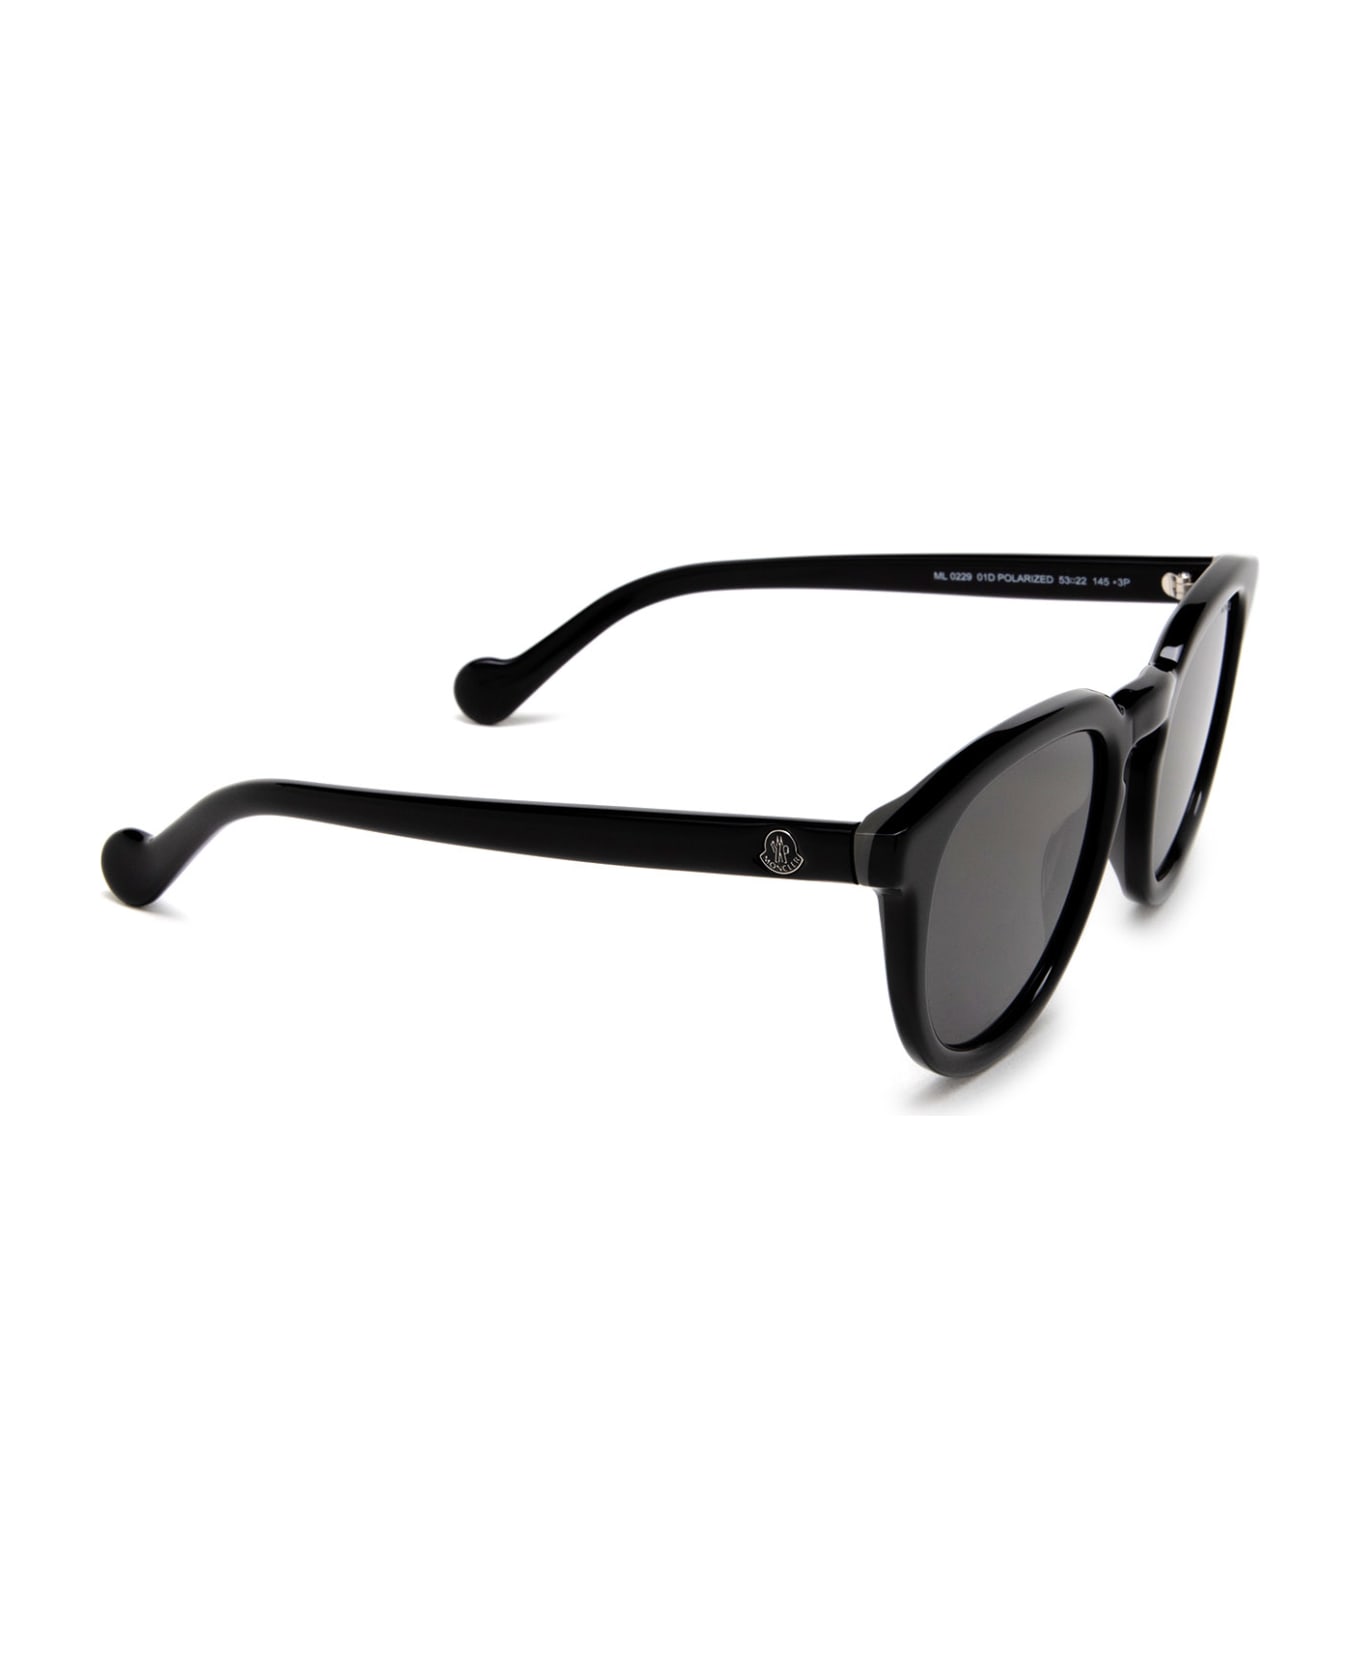 Moncler Eyewear Ml0229 Shiny Black Sunglasses - Shiny Black サングラス